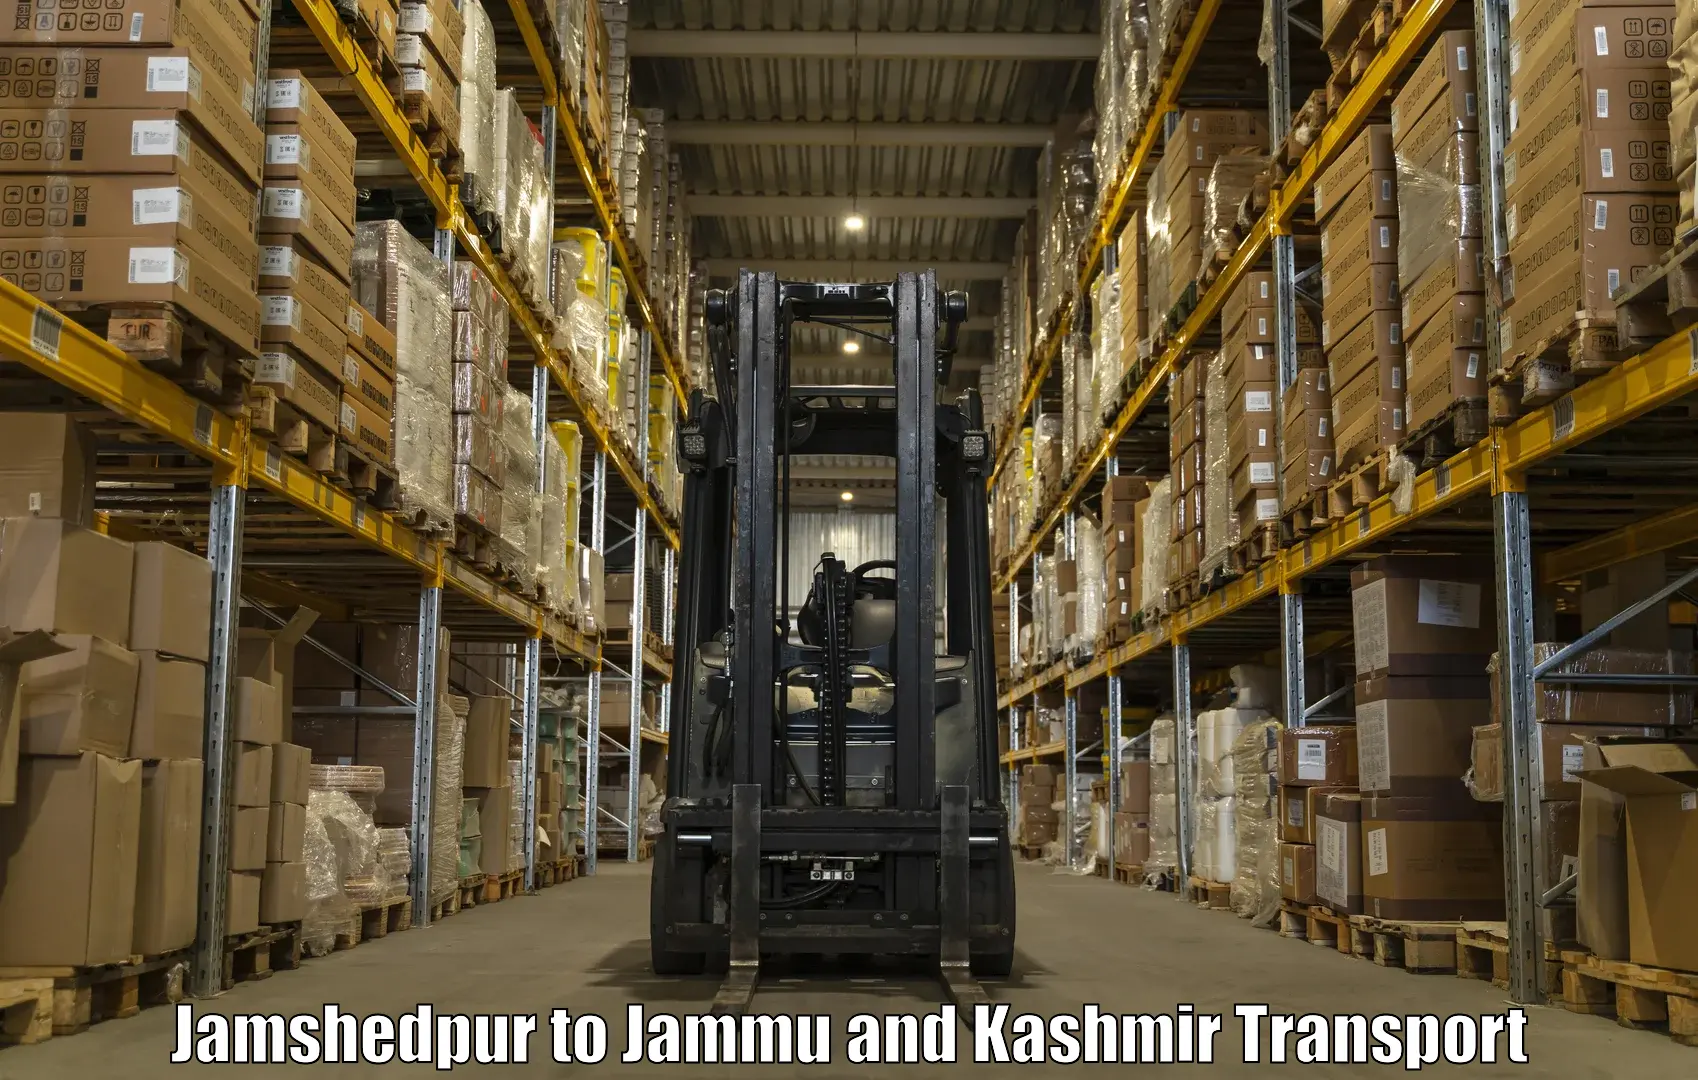 Online transport service Jamshedpur to Udhampur